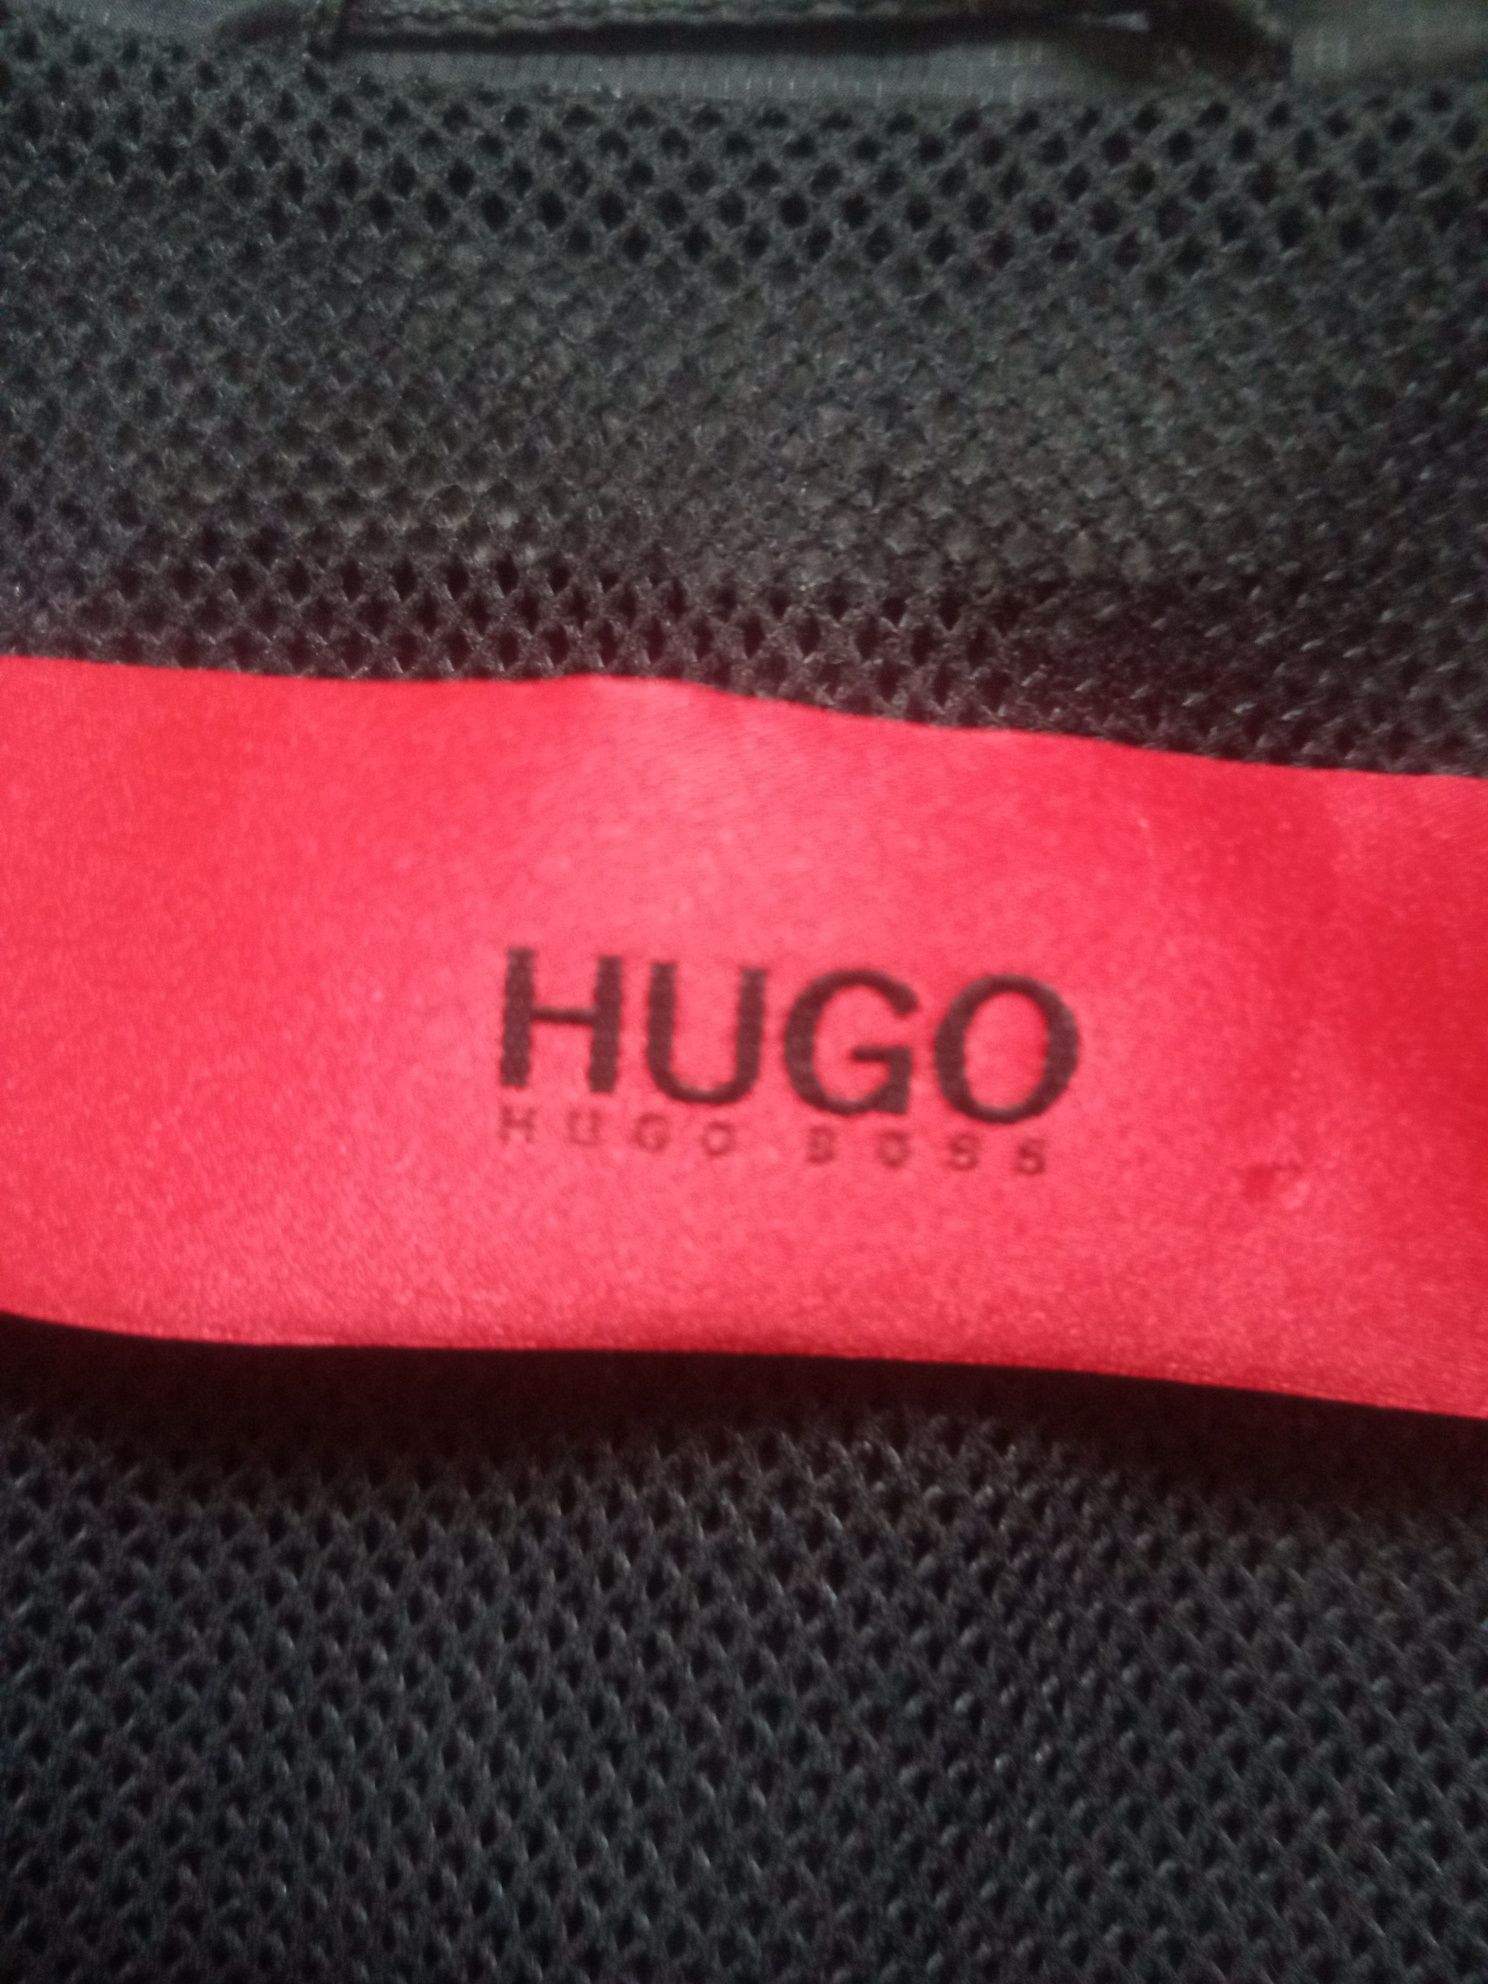 Kurtka męska Hugo Boss r. S/M